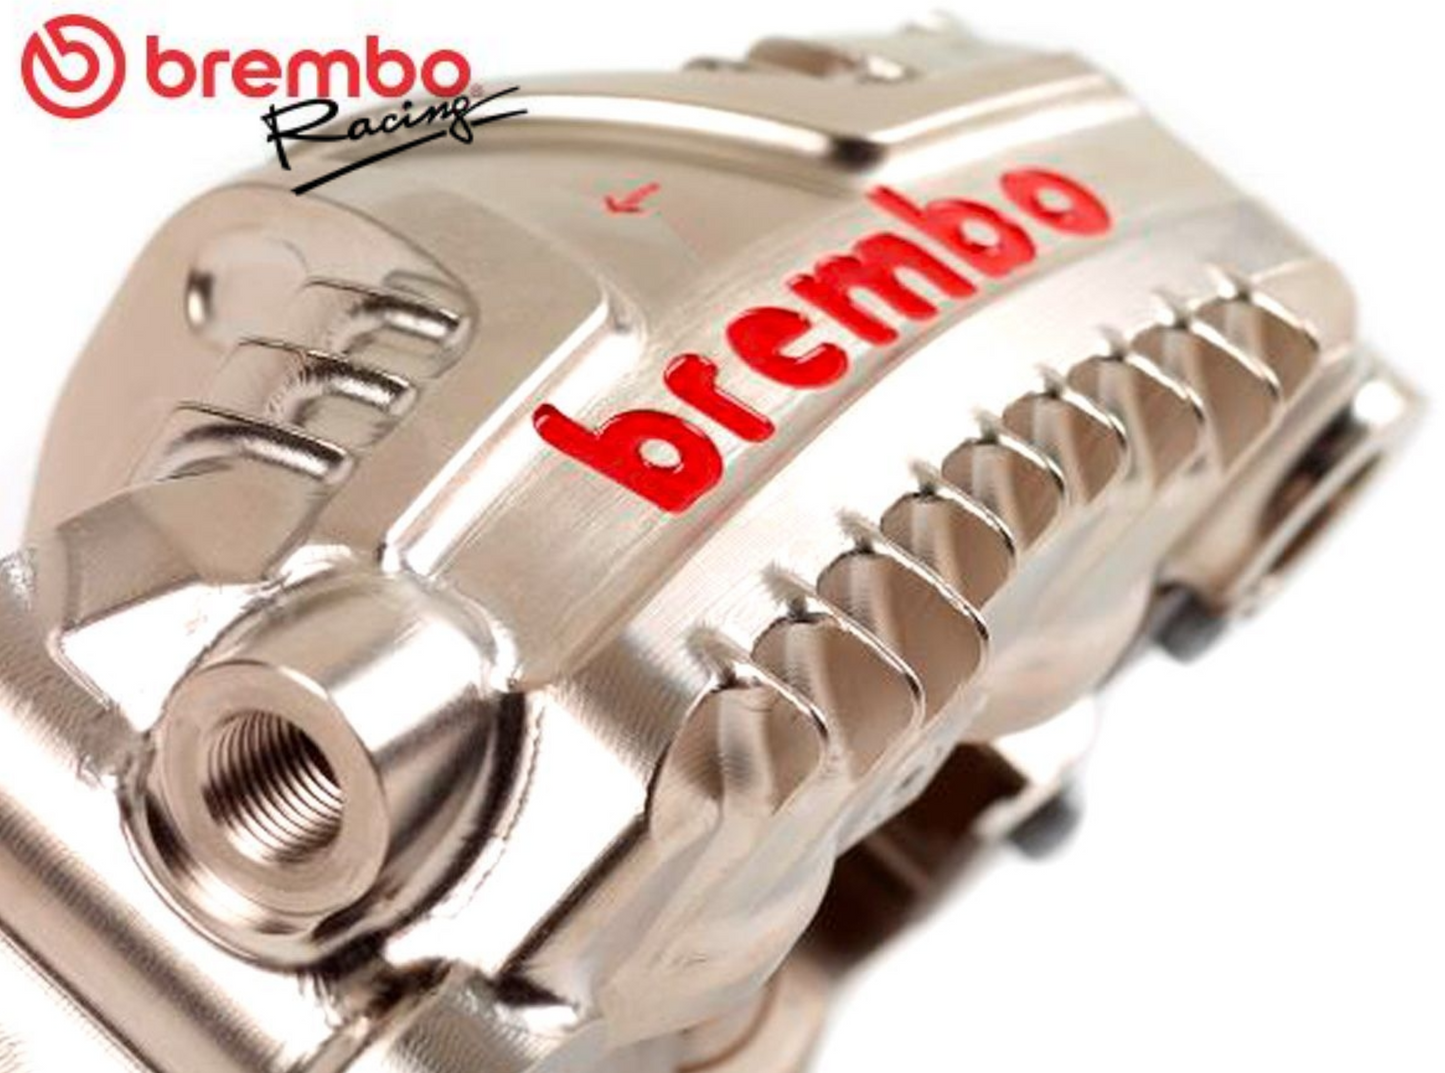 5/9イタリア在庫あり brembo GP4-LM エンデュランス ラジアル モノブロック CNCキャリパー  ニッケルコート 108mmピッチ XC1AB10 XC1AB11 ブレンボ レーシング